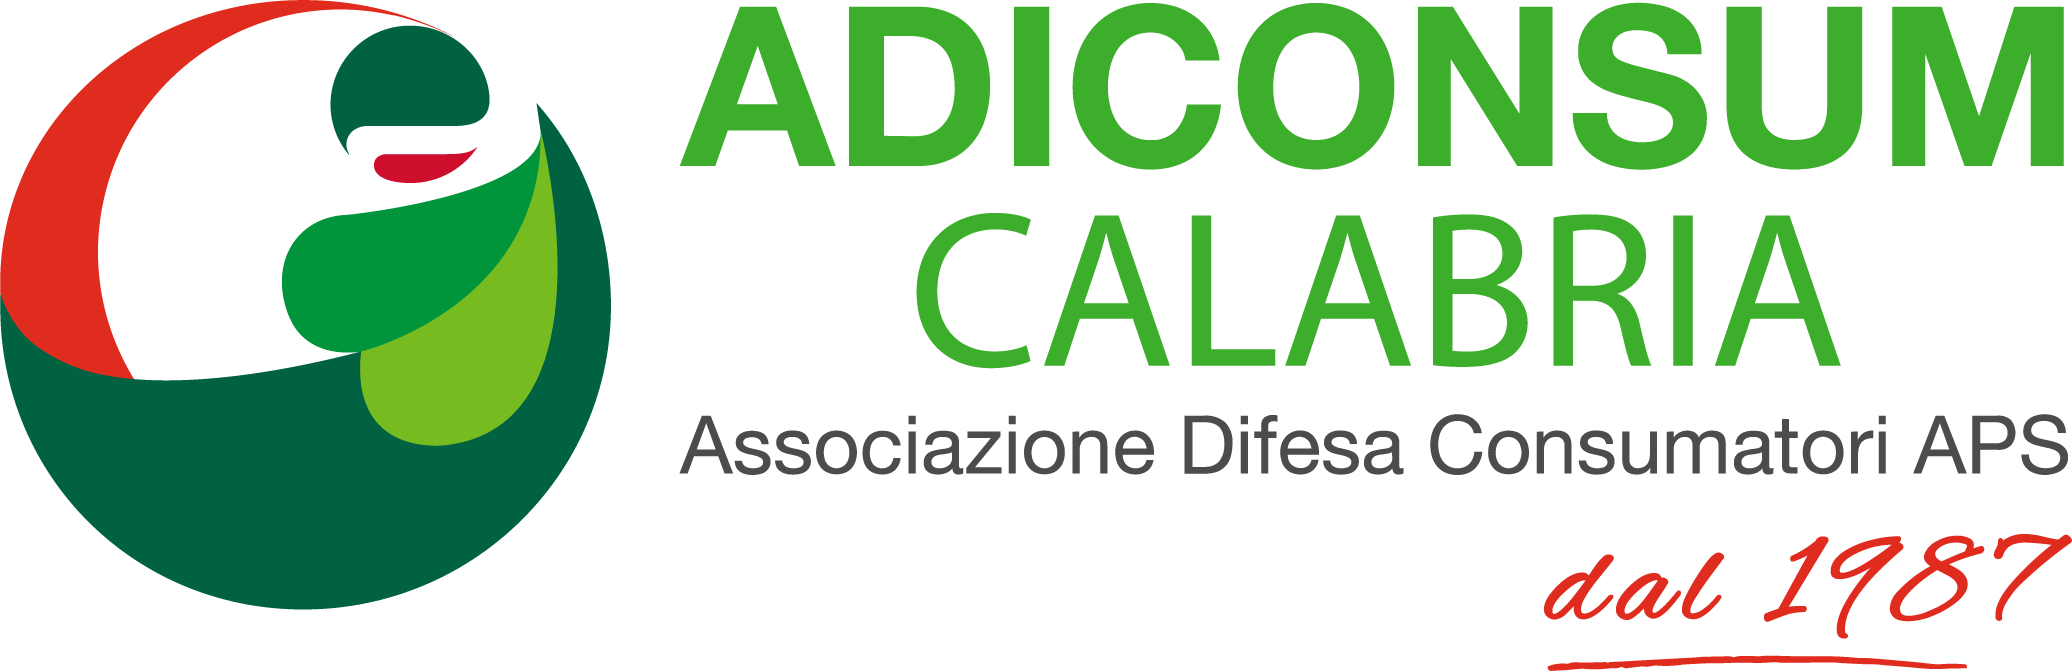 Adiconsum Calabria APS